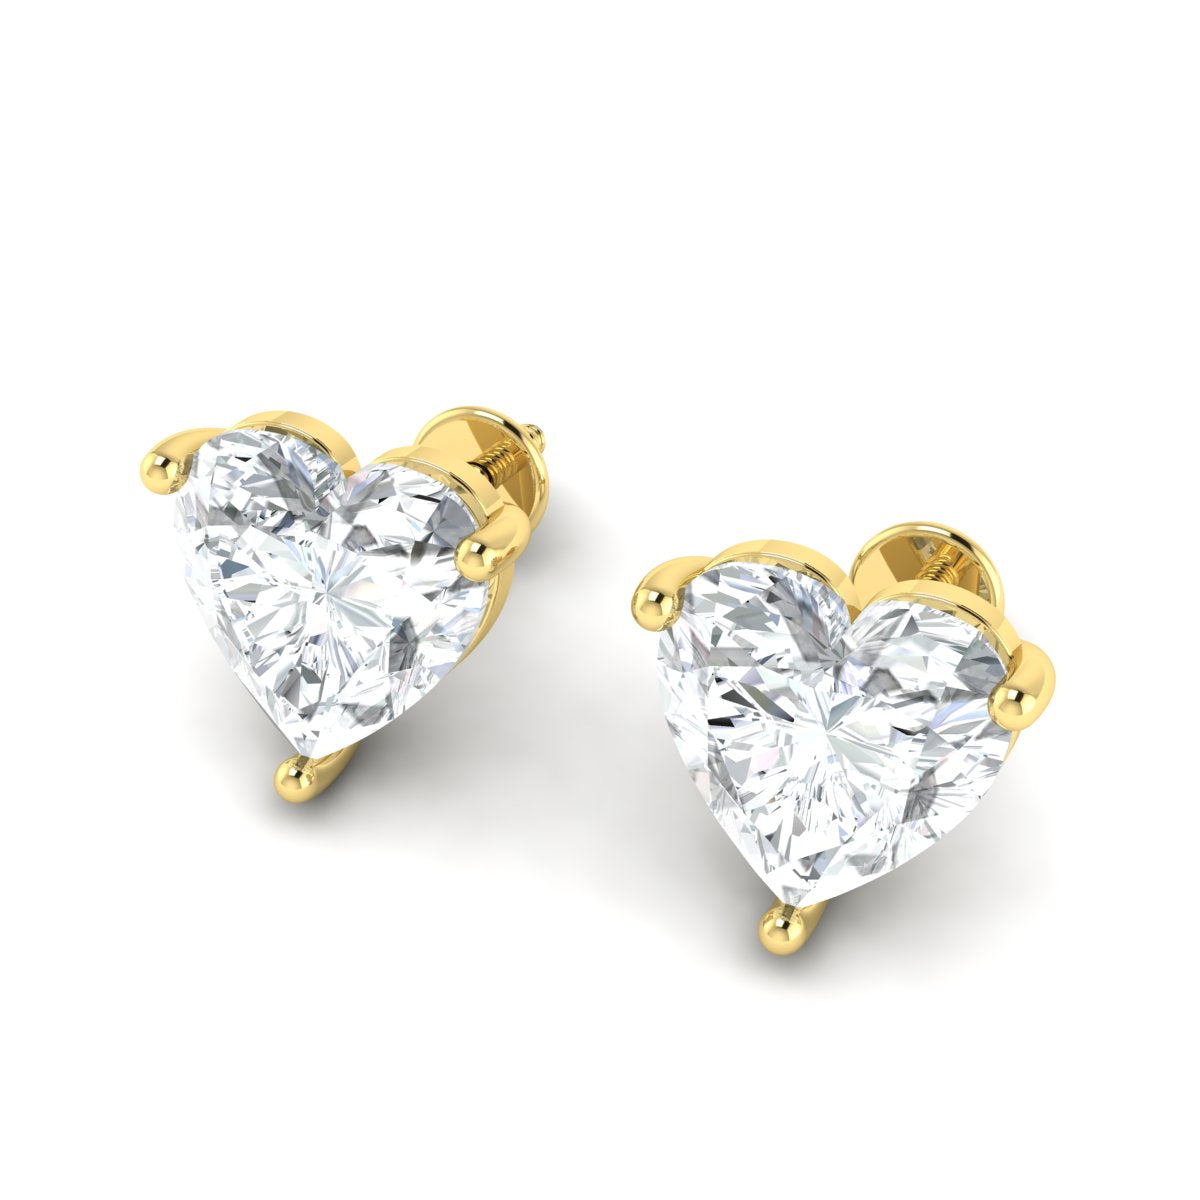 2 CT Brilliant Heart Cut Moissanite Earrings, 14K Solid Gold earrings